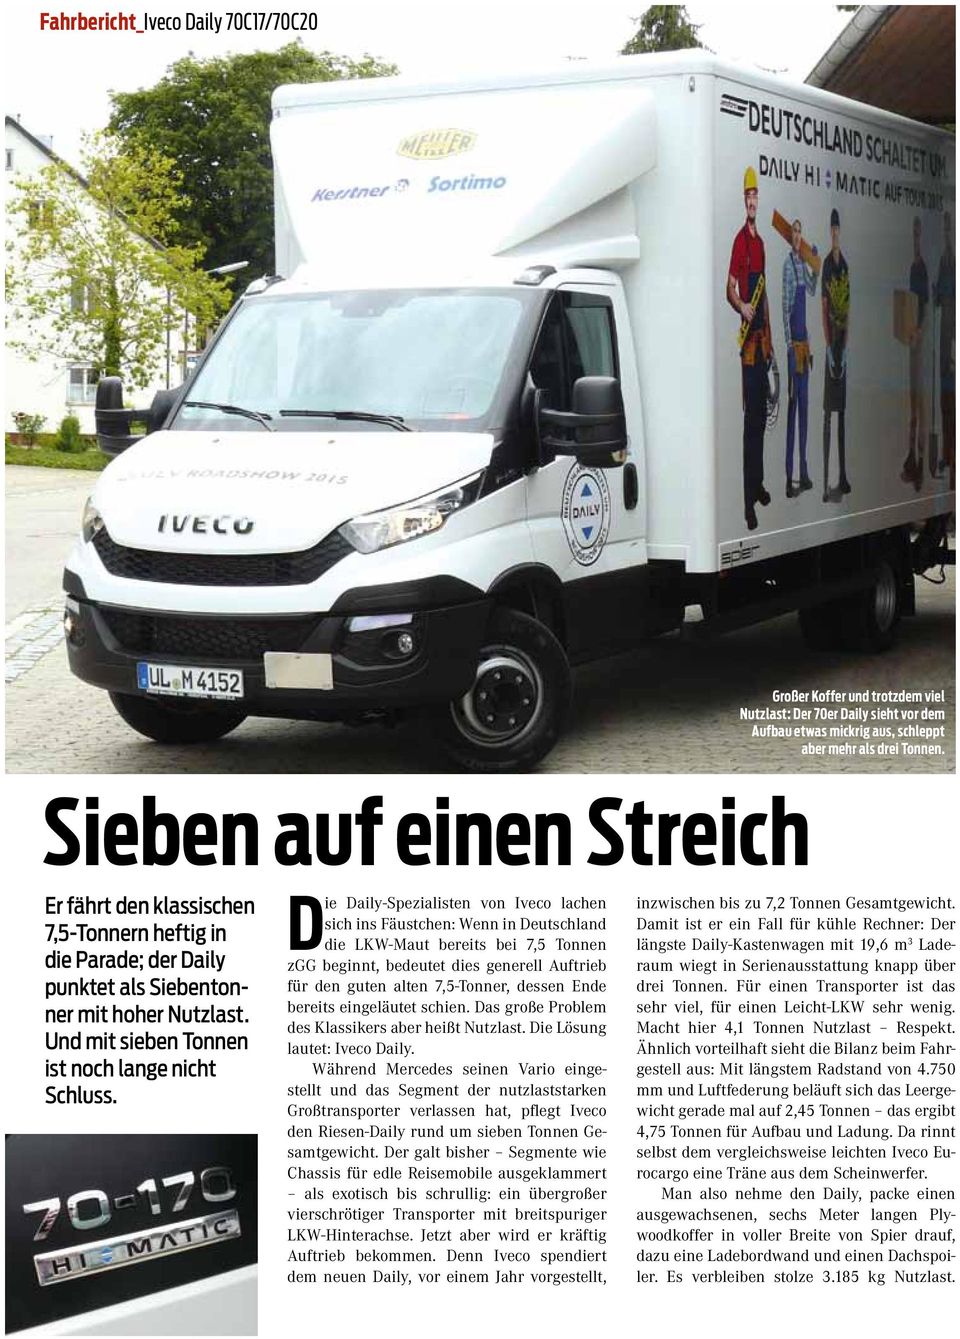 Die Daily-Spezialisten von Iveco lachen sich ins Fäustchen: Wenn in Deutschland die LKW-Maut bereits bei 7,5 Tonnen zgg beginnt, bedeutet dies generell Auftrieb für den guten alten 7,5-Tonner, dessen